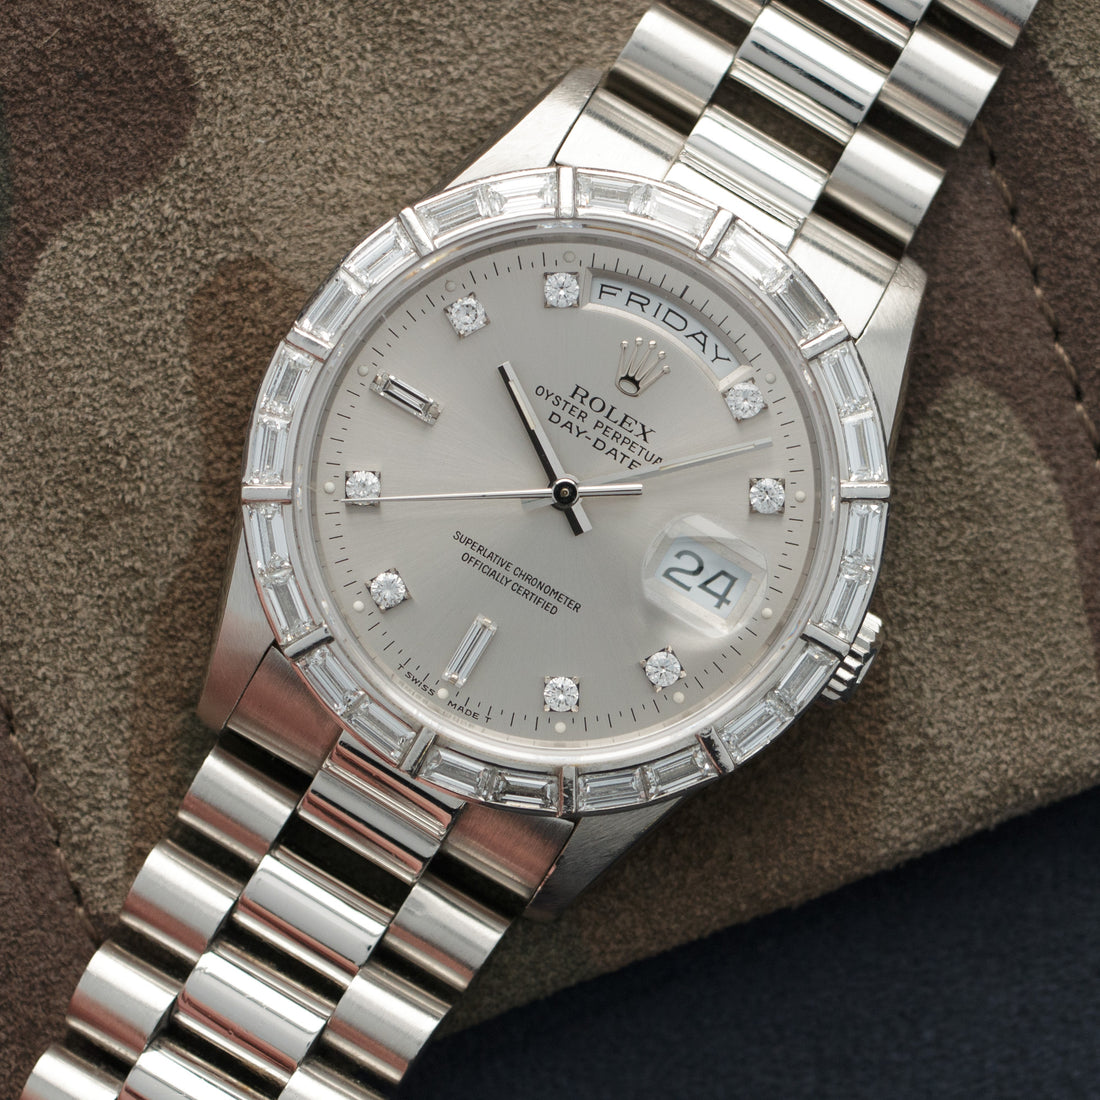 Rolex Platinum Day-Date Diamond Watch Ref. 18366